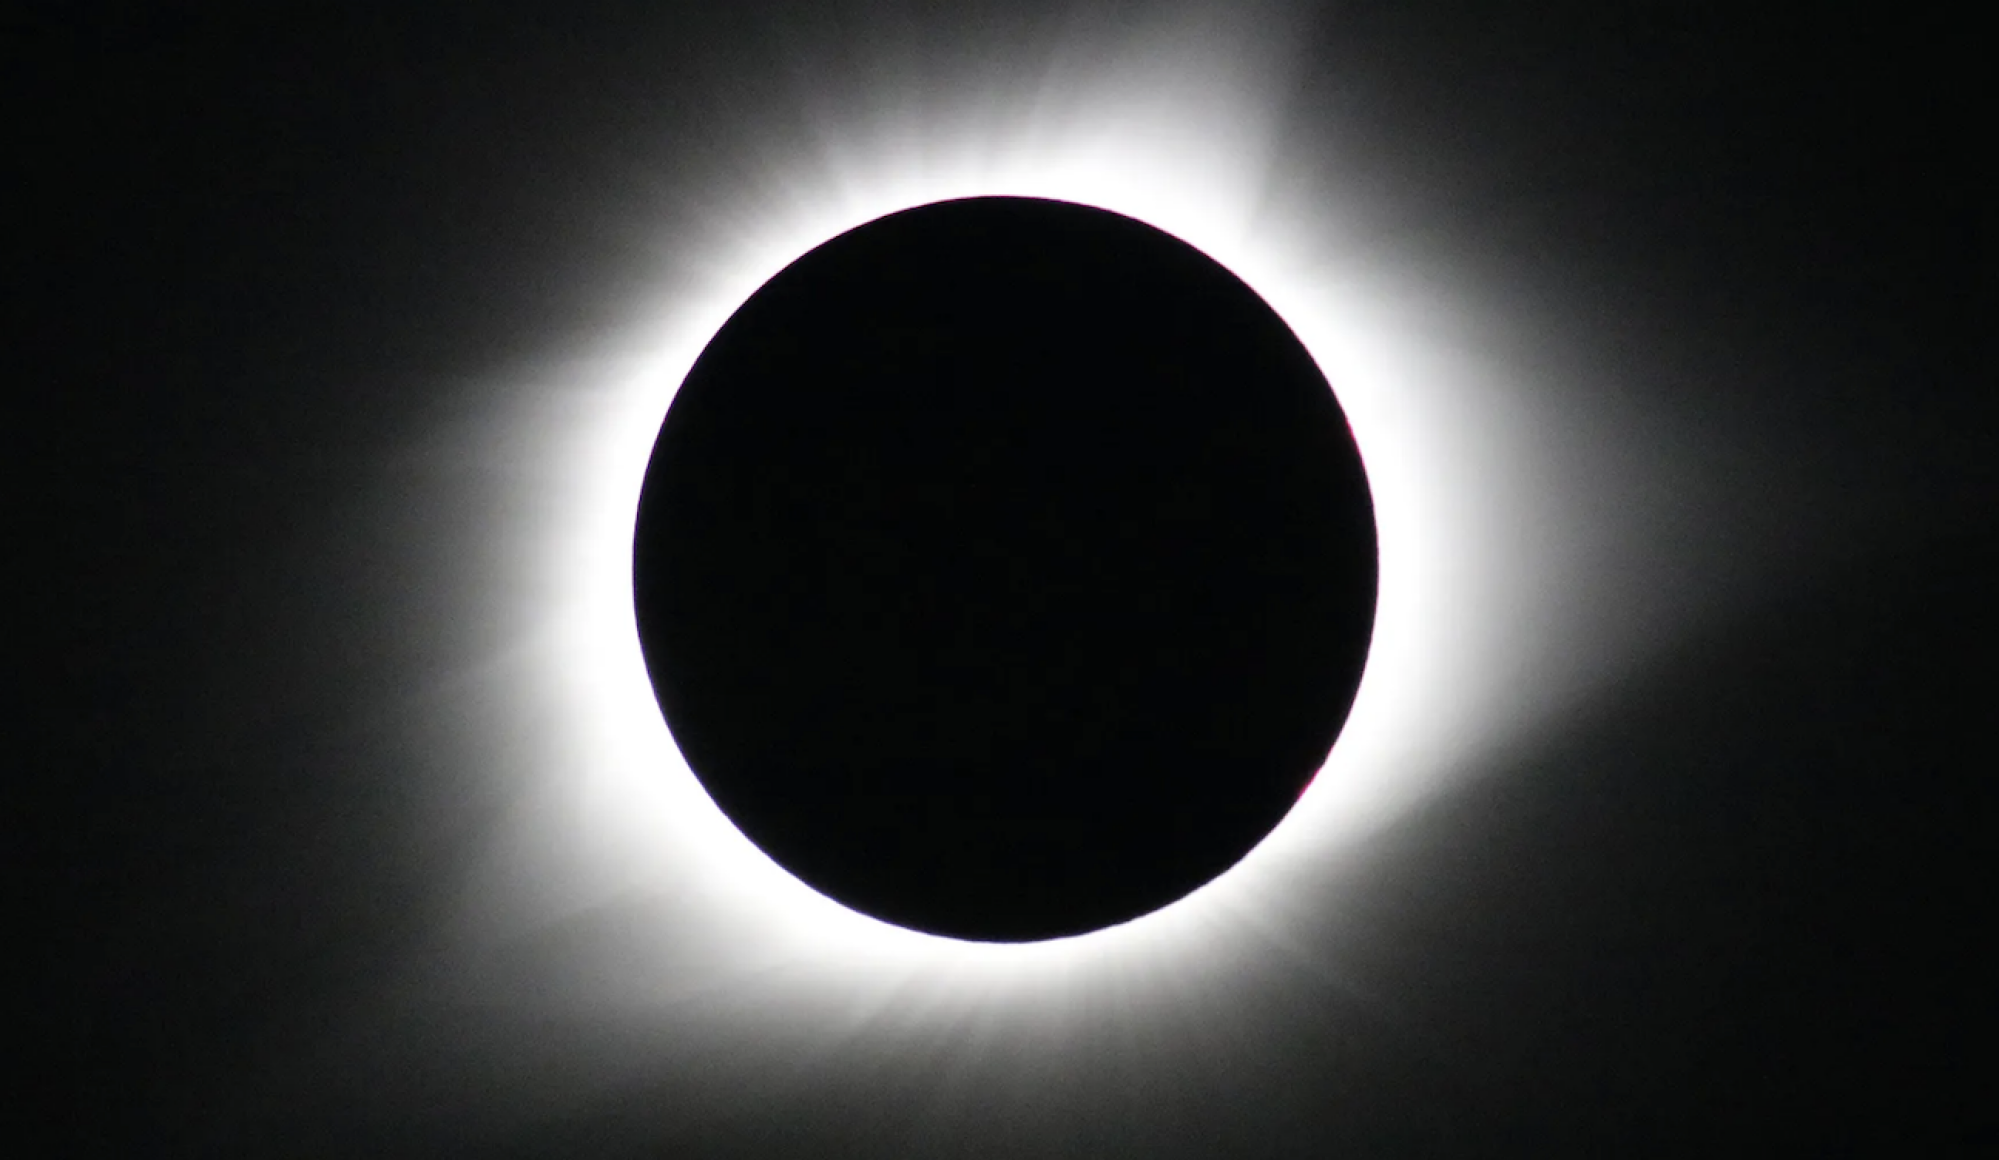 Une éclipse totale de Soleil photographiée en août 2017.